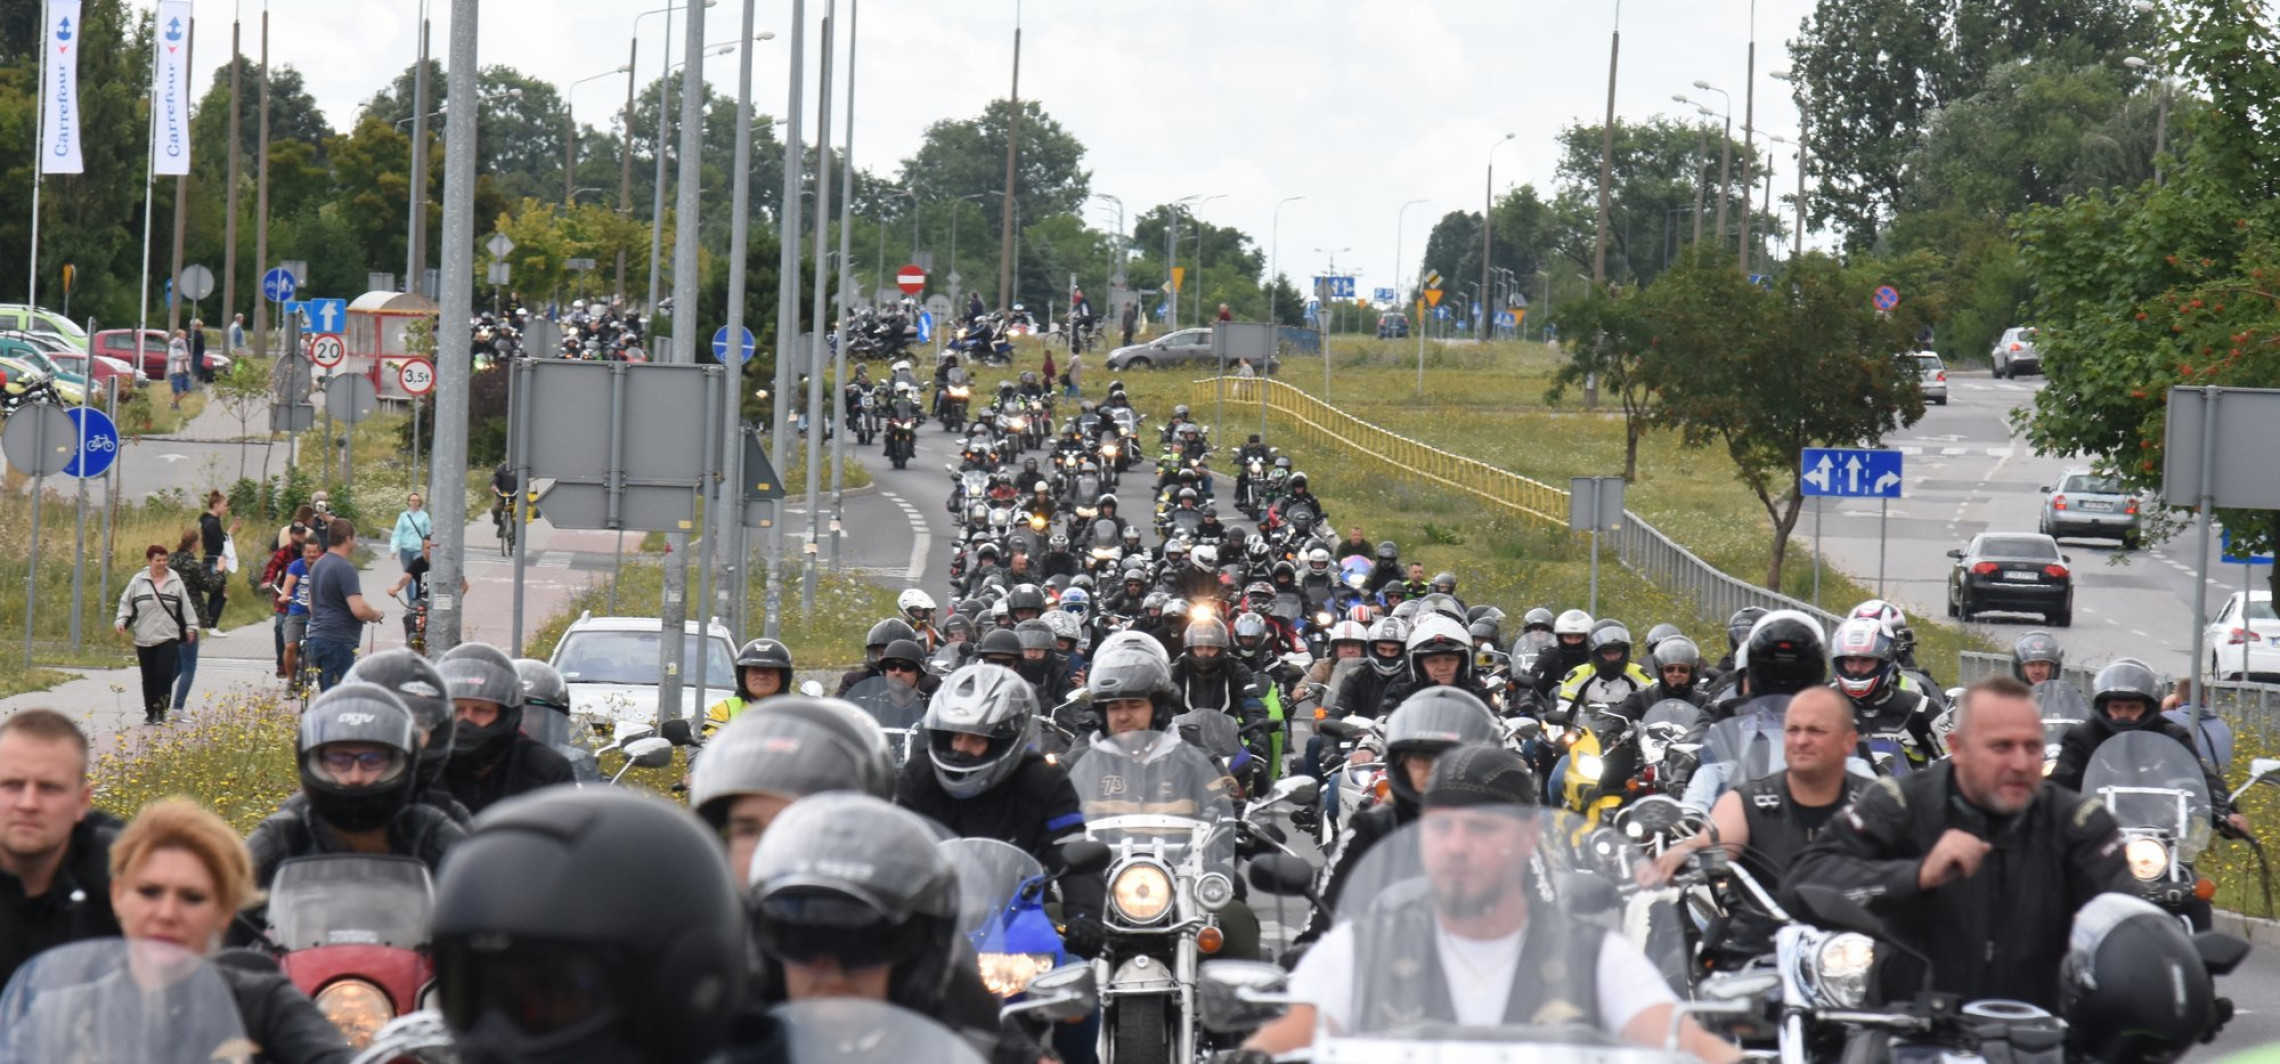 Inowrocław - W sobotę parada motocykli. Będą utrudnienia